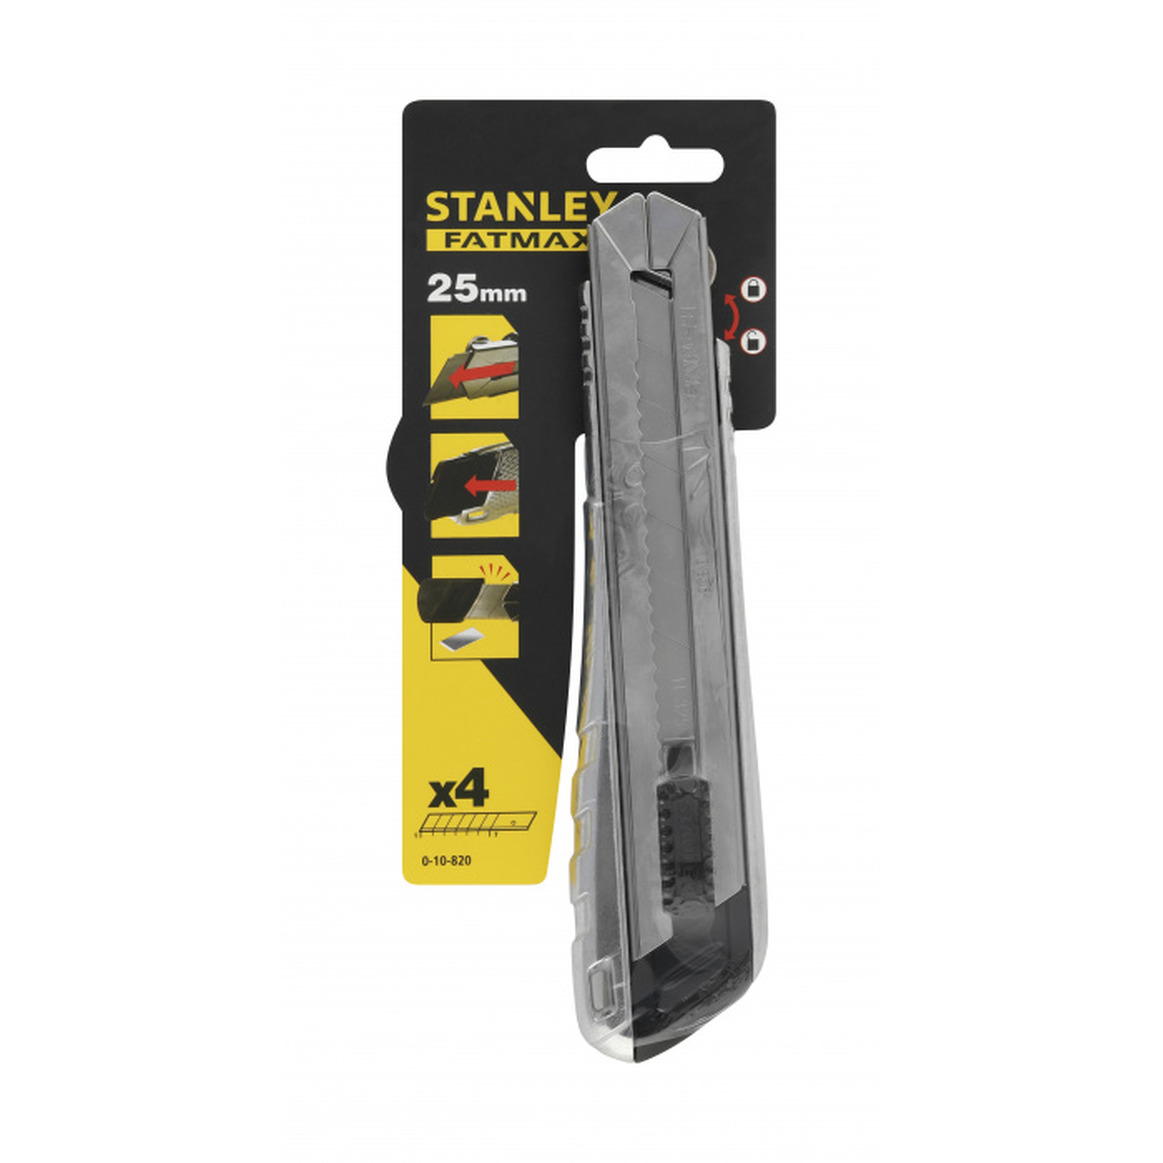 Нож Stanley 25мм цельнометалл.корпус 0-10-820